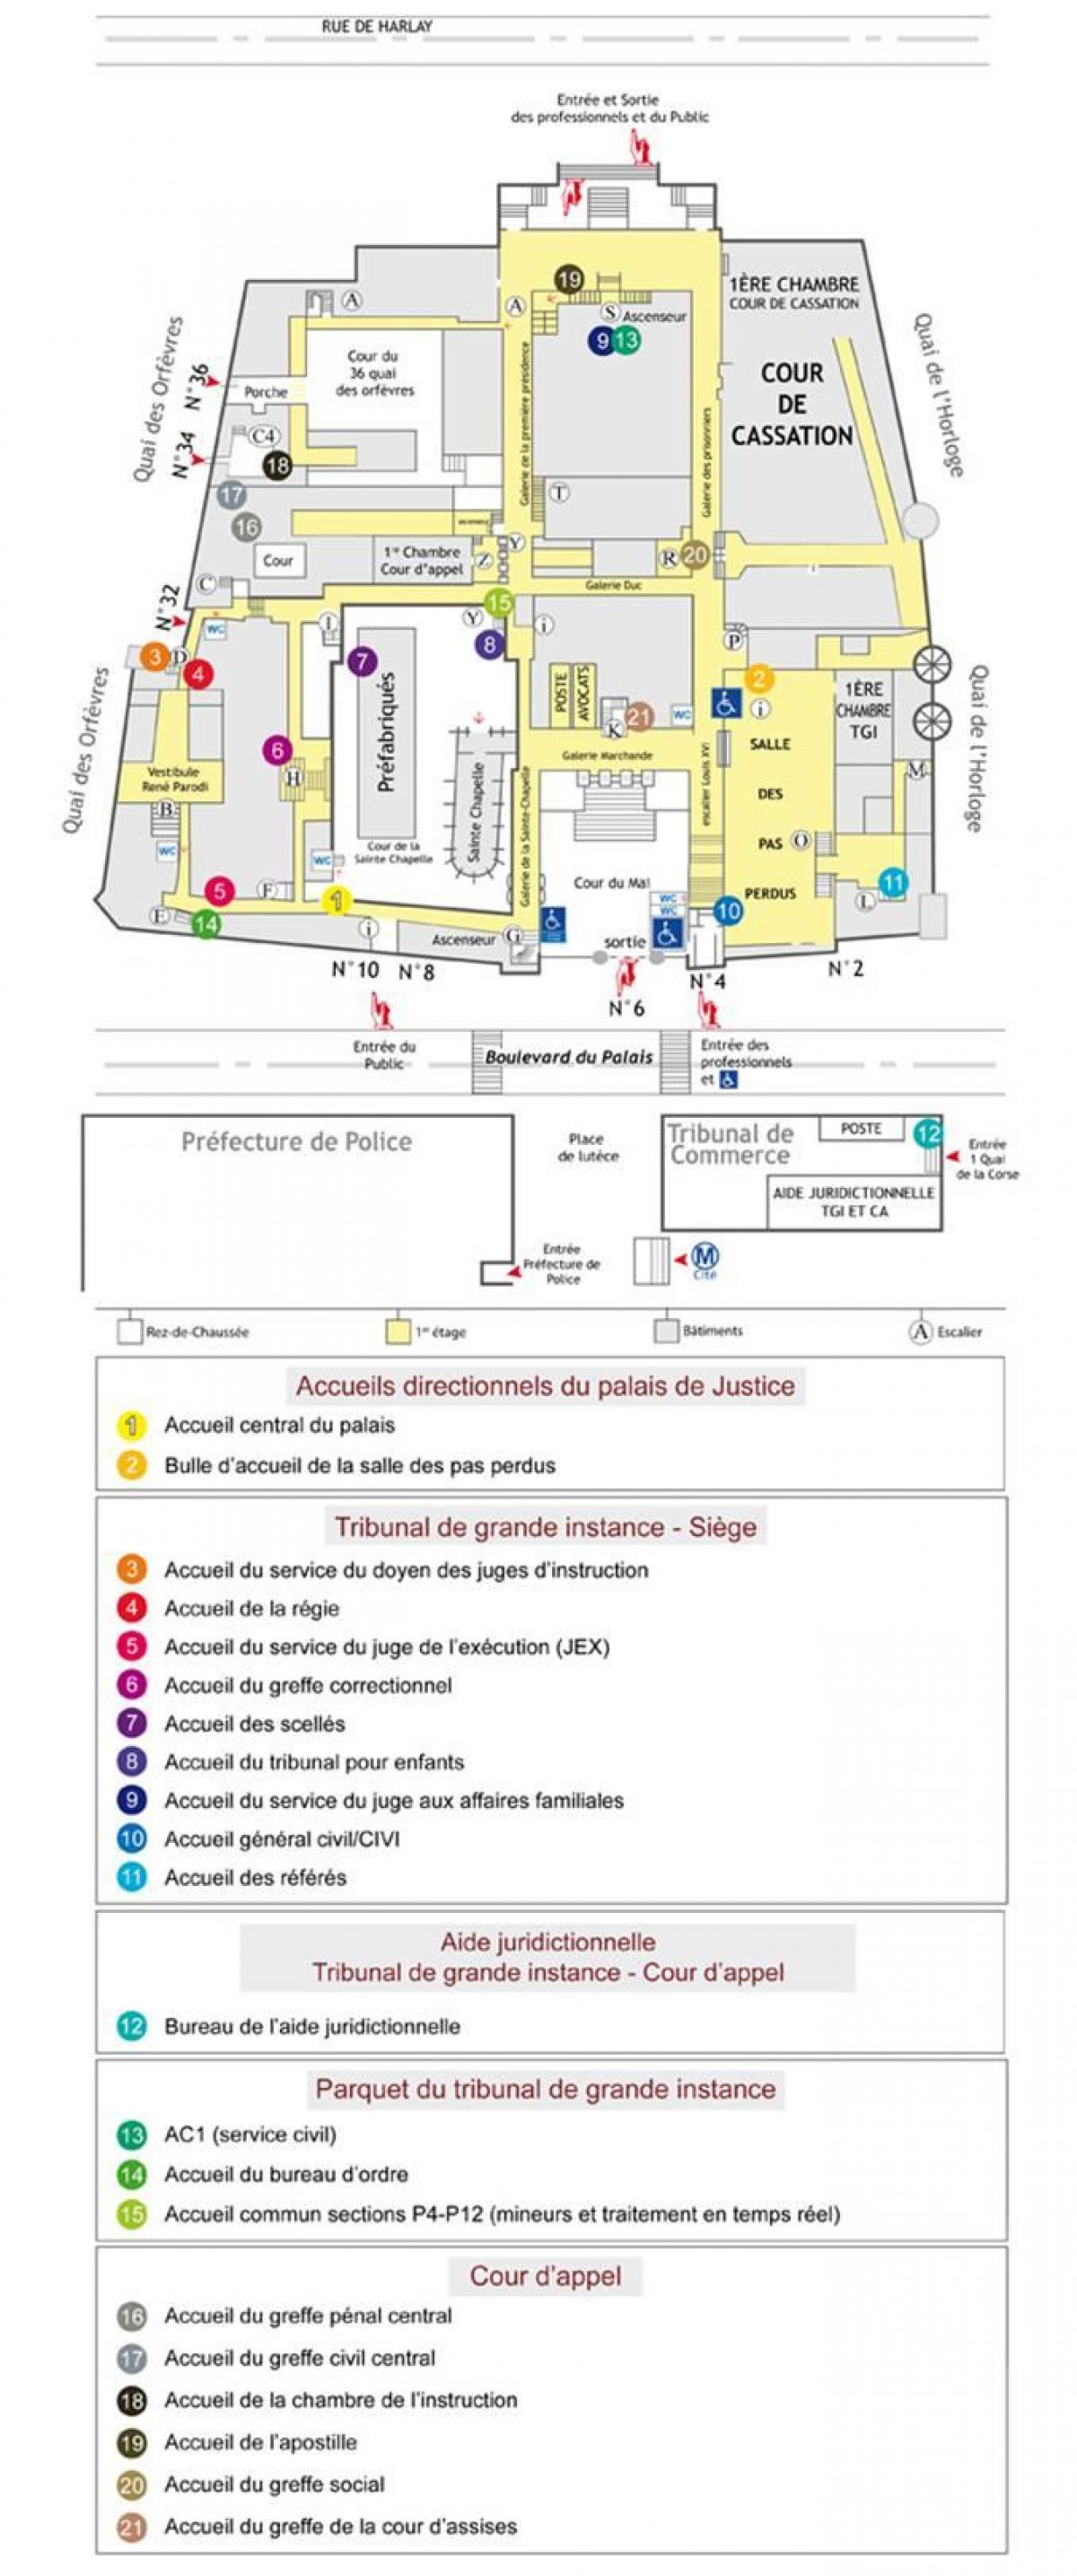 Map of The Palais de Justice Paris